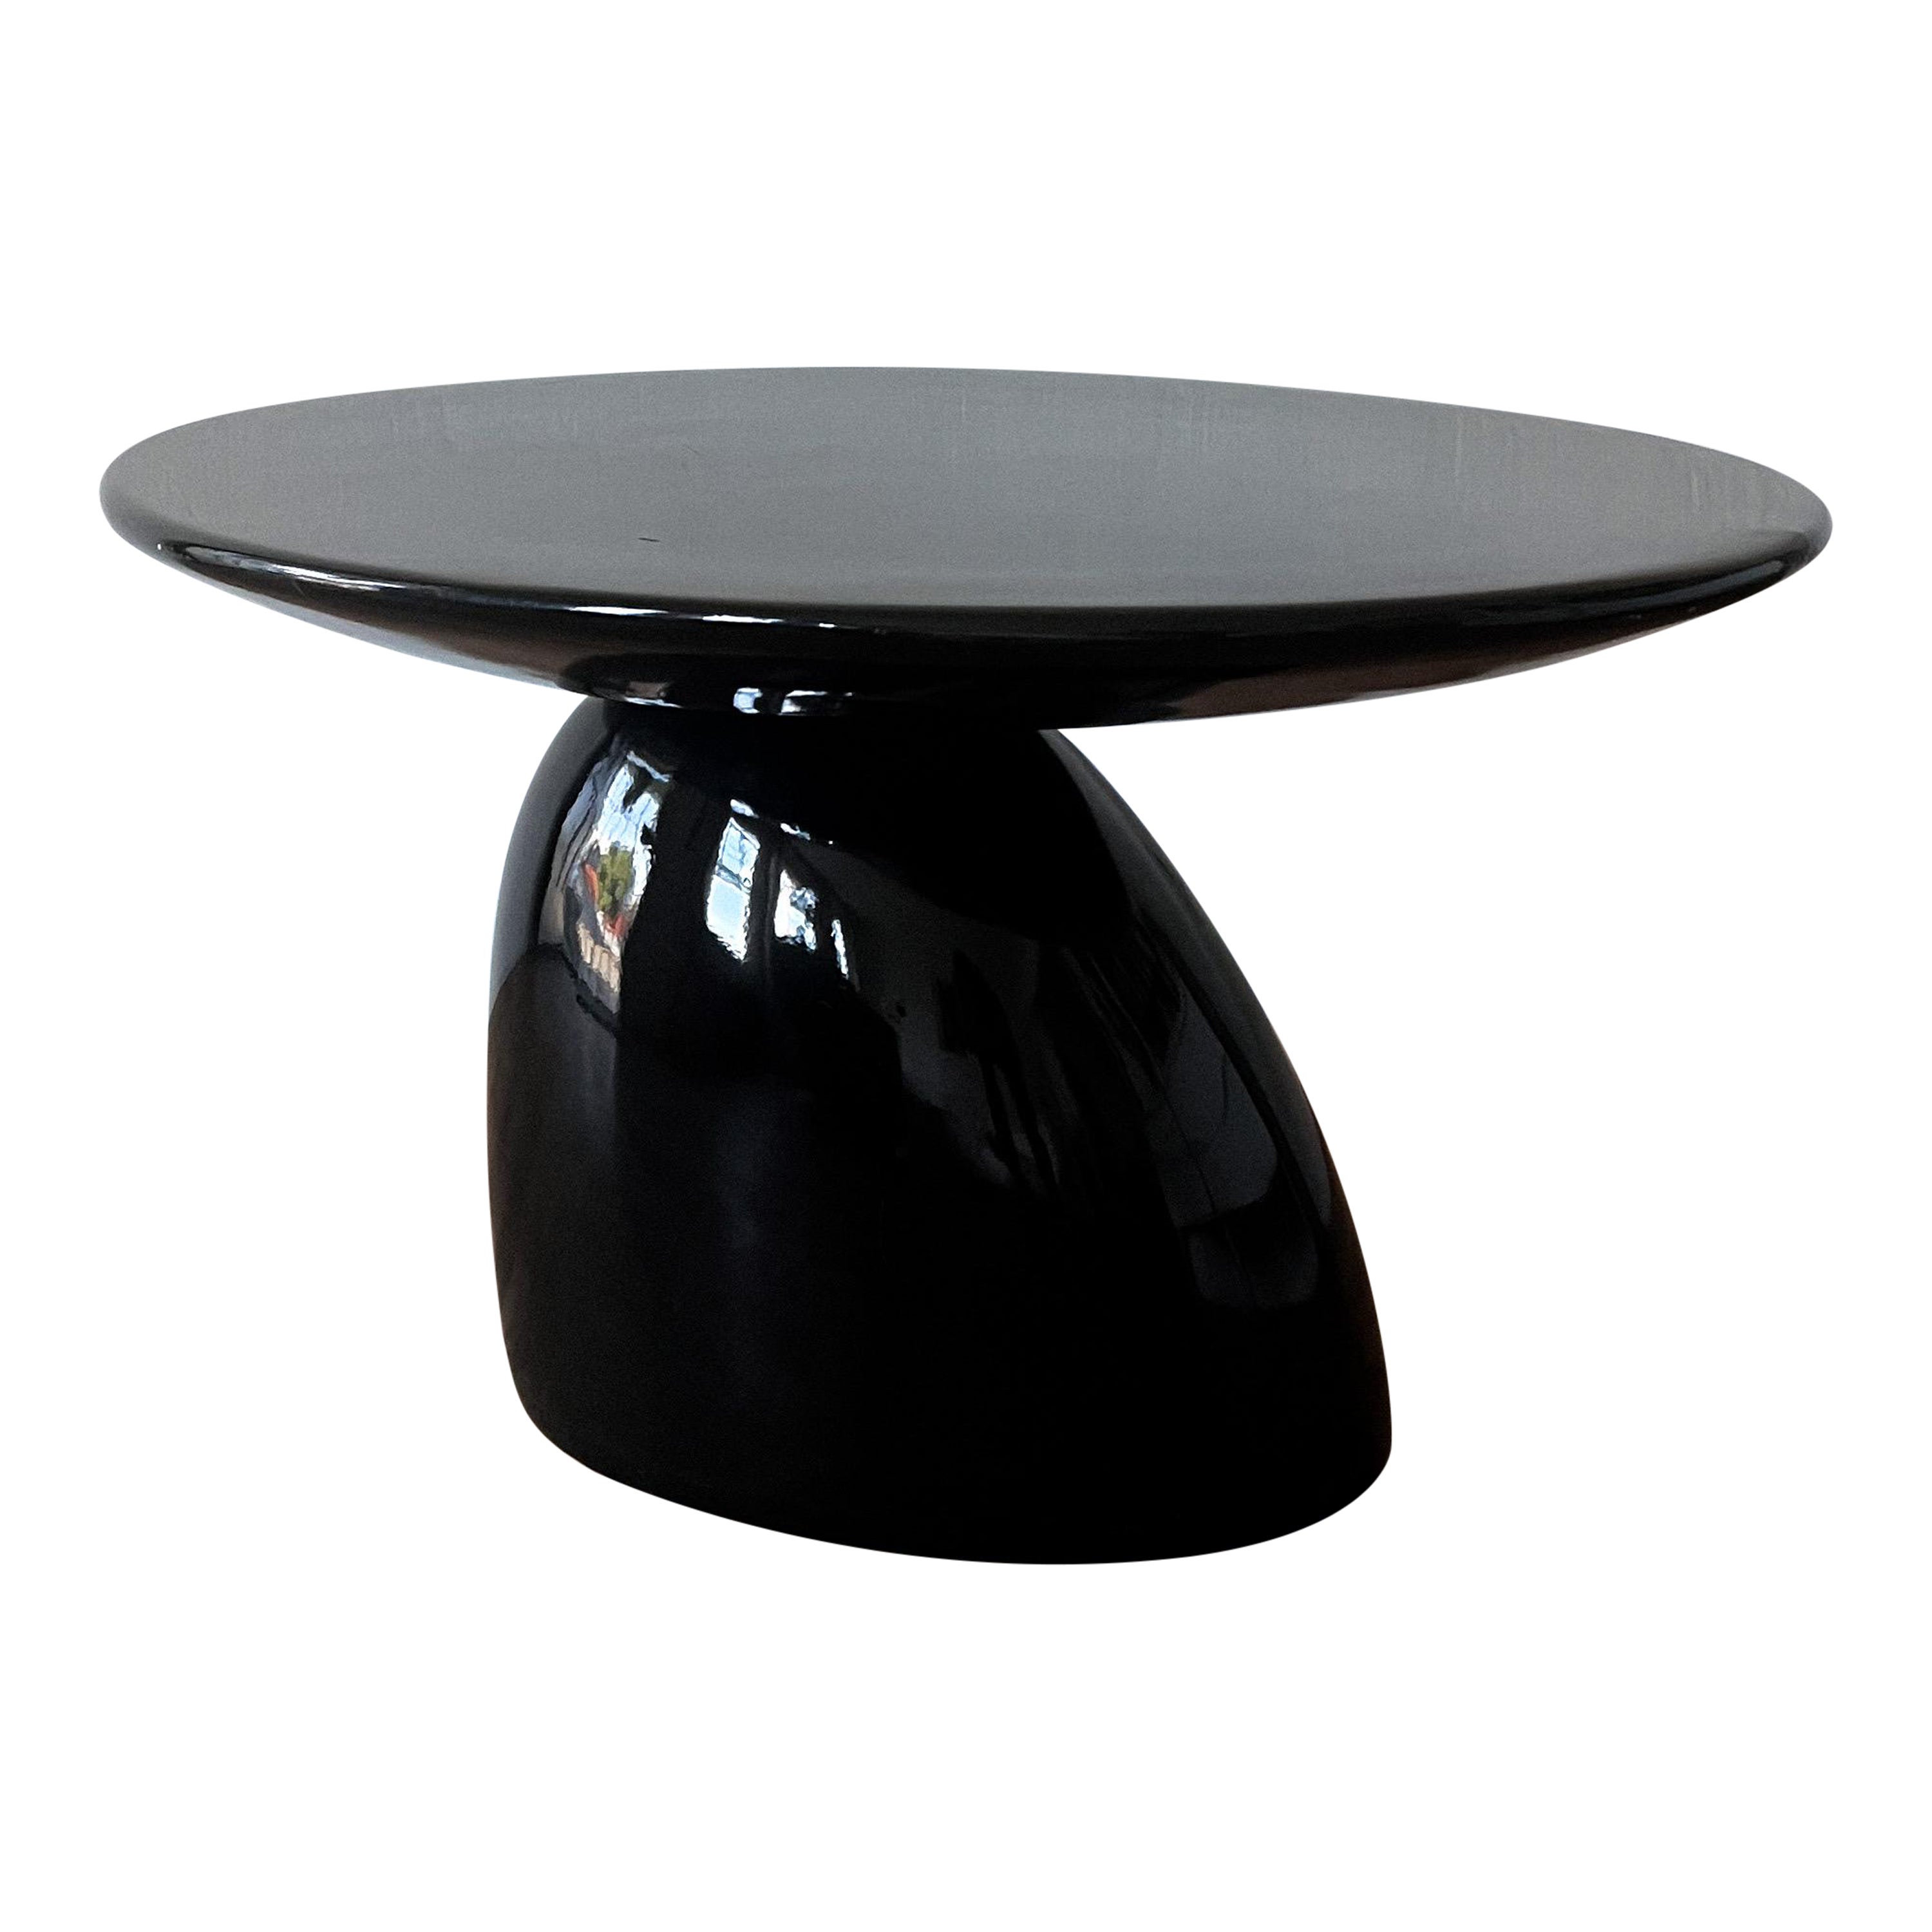 Tavolino in stile "Parabel" dell'era spaziale attribuito a Eero Aarnio in vendita